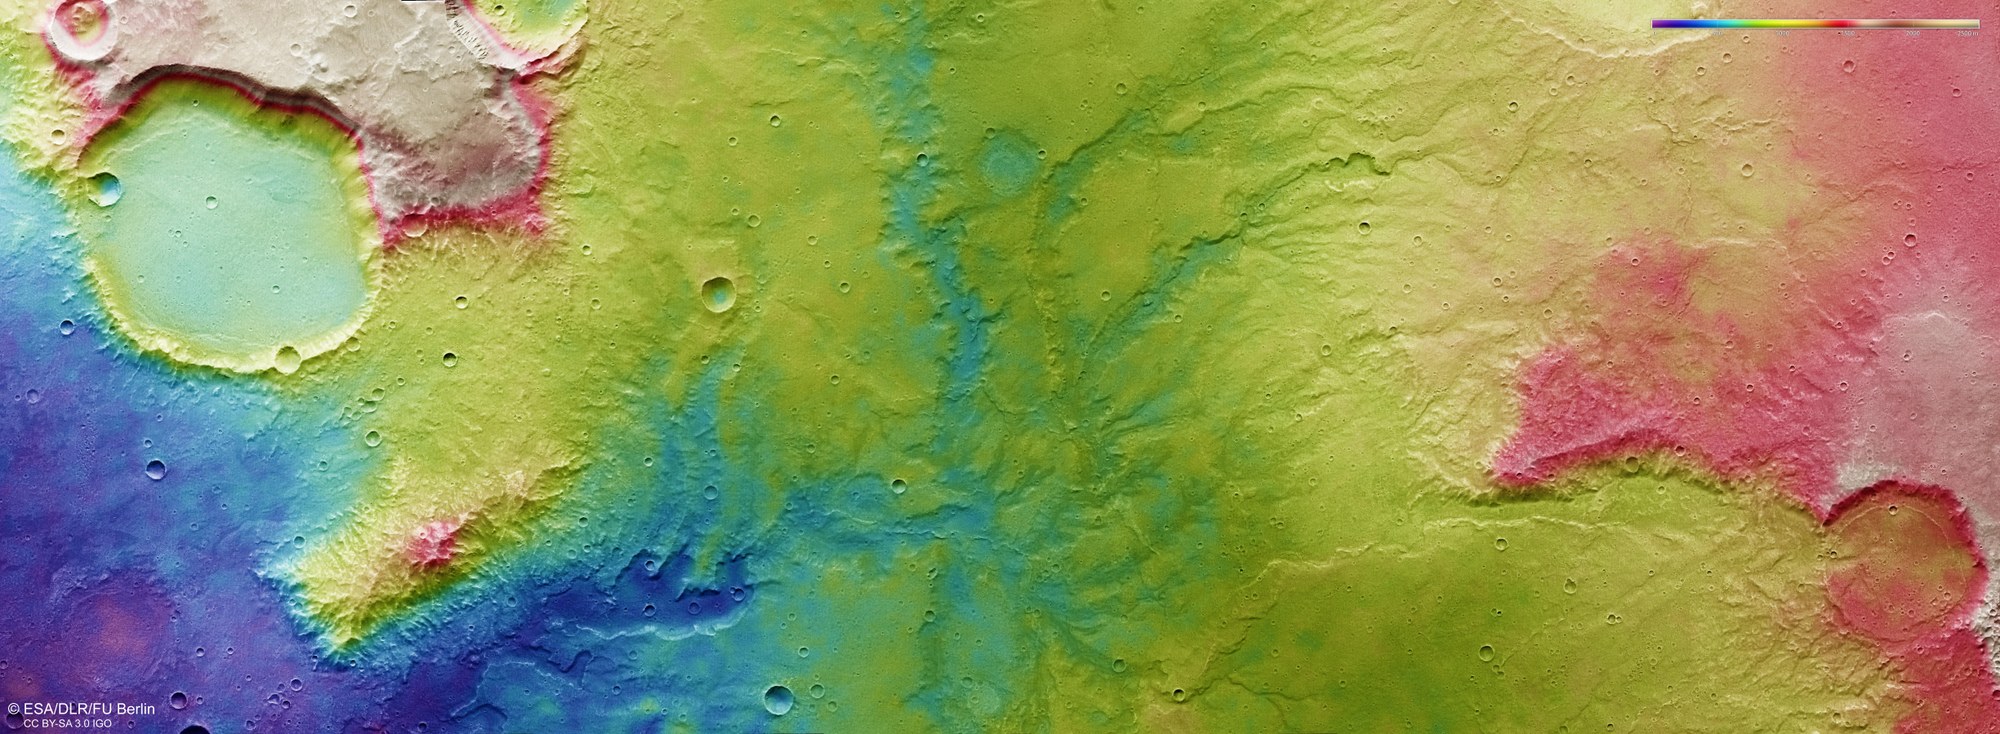 Farbkodierte topographische Bildkarte des Talnetzwerks östlich des Kraters Huygens